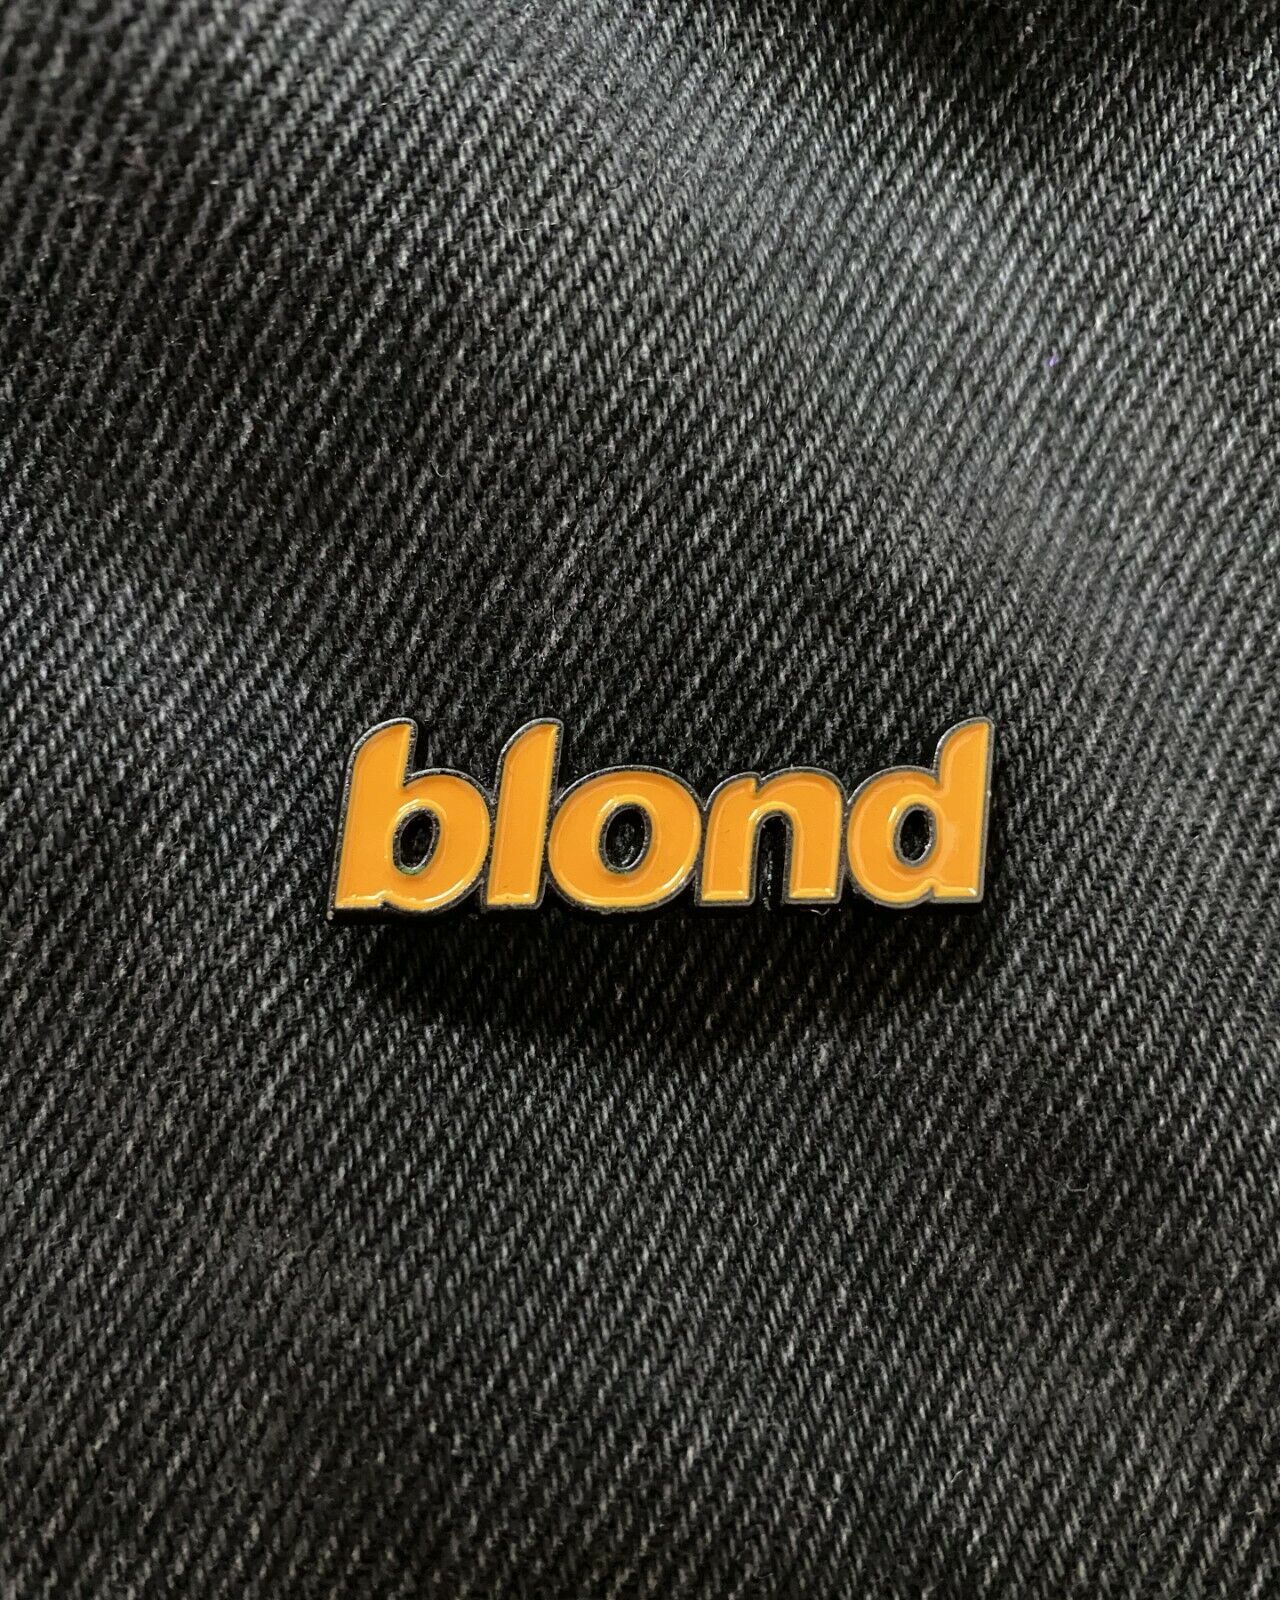 Frank Ocean - Blond Enamel Pin